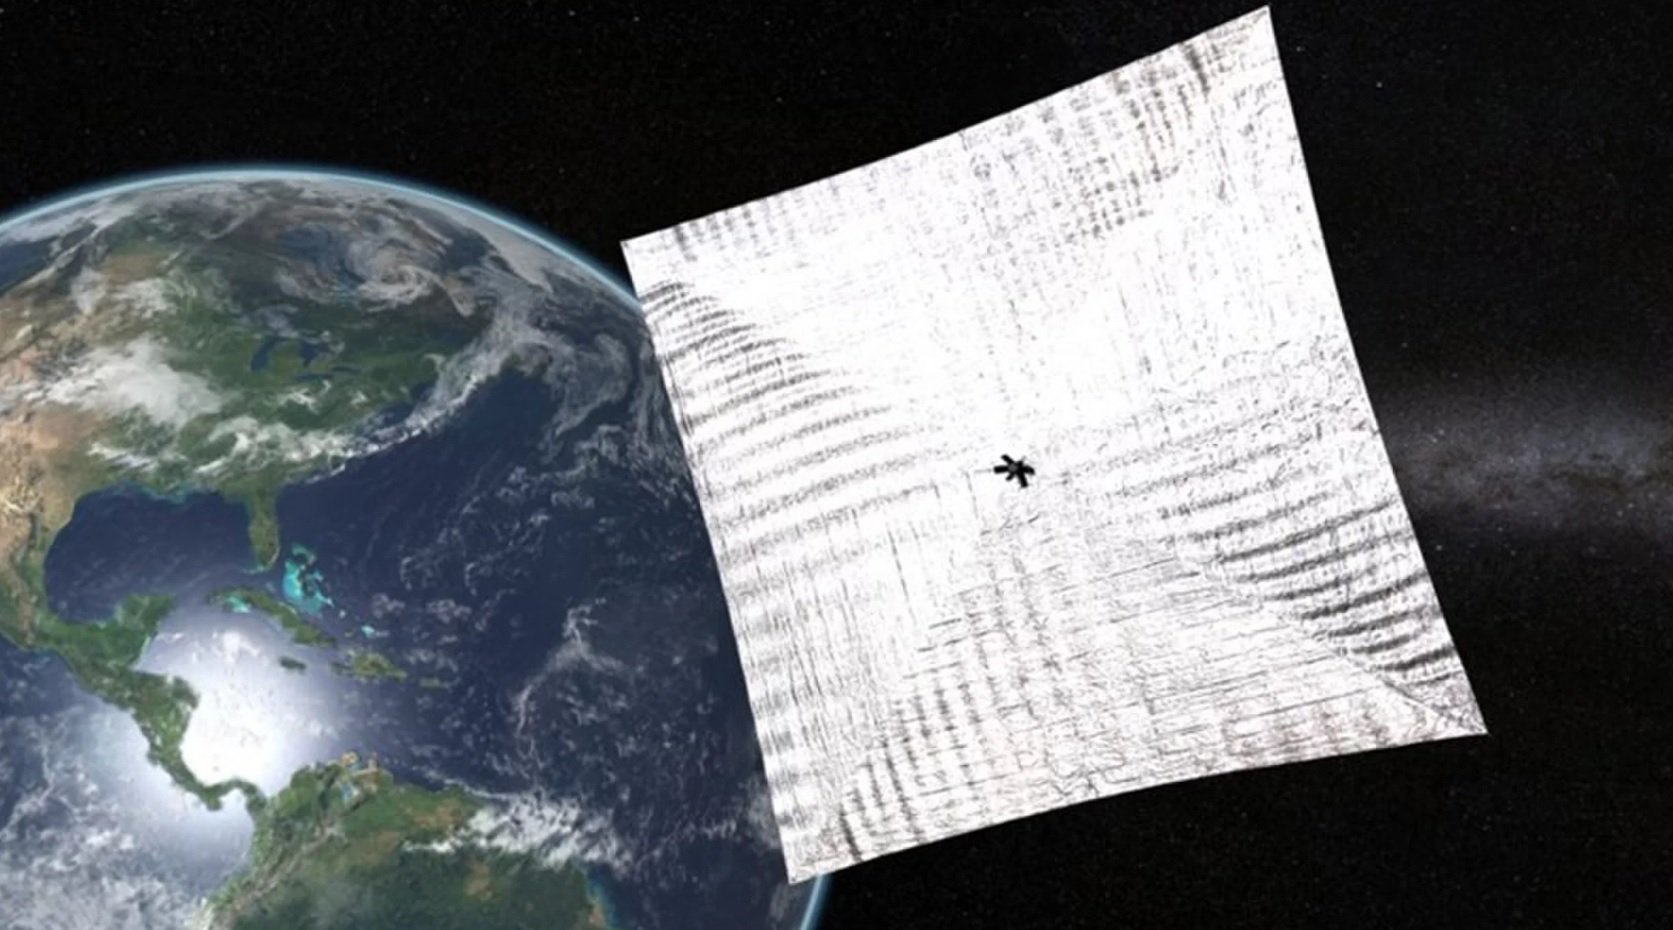 Başlangıç güneş yelken 2.0 alçak yörüngeye yapılacak bu yaz